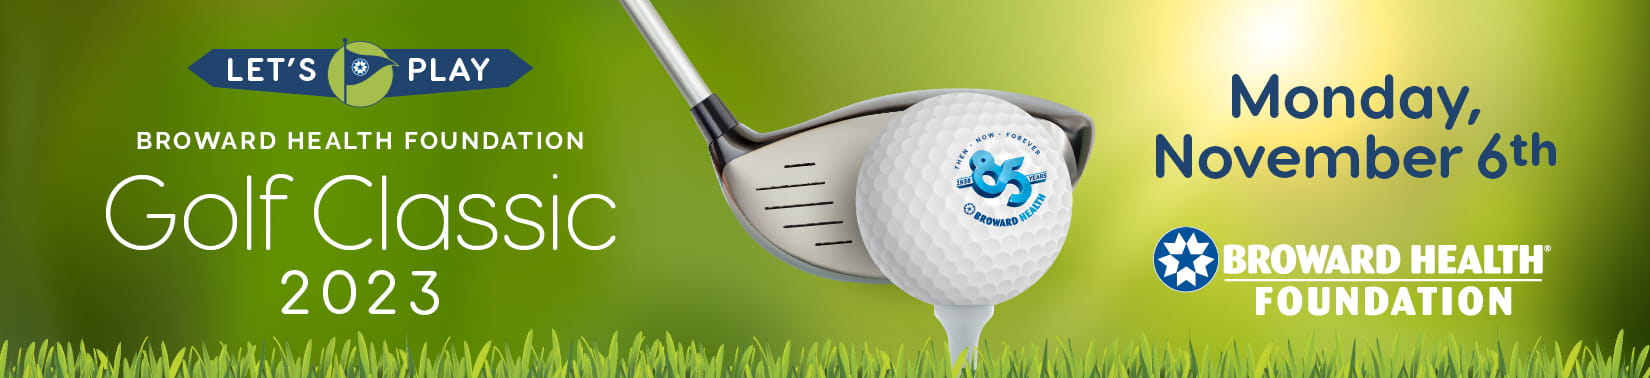 Broward Health Foundation Golf Classic 2023